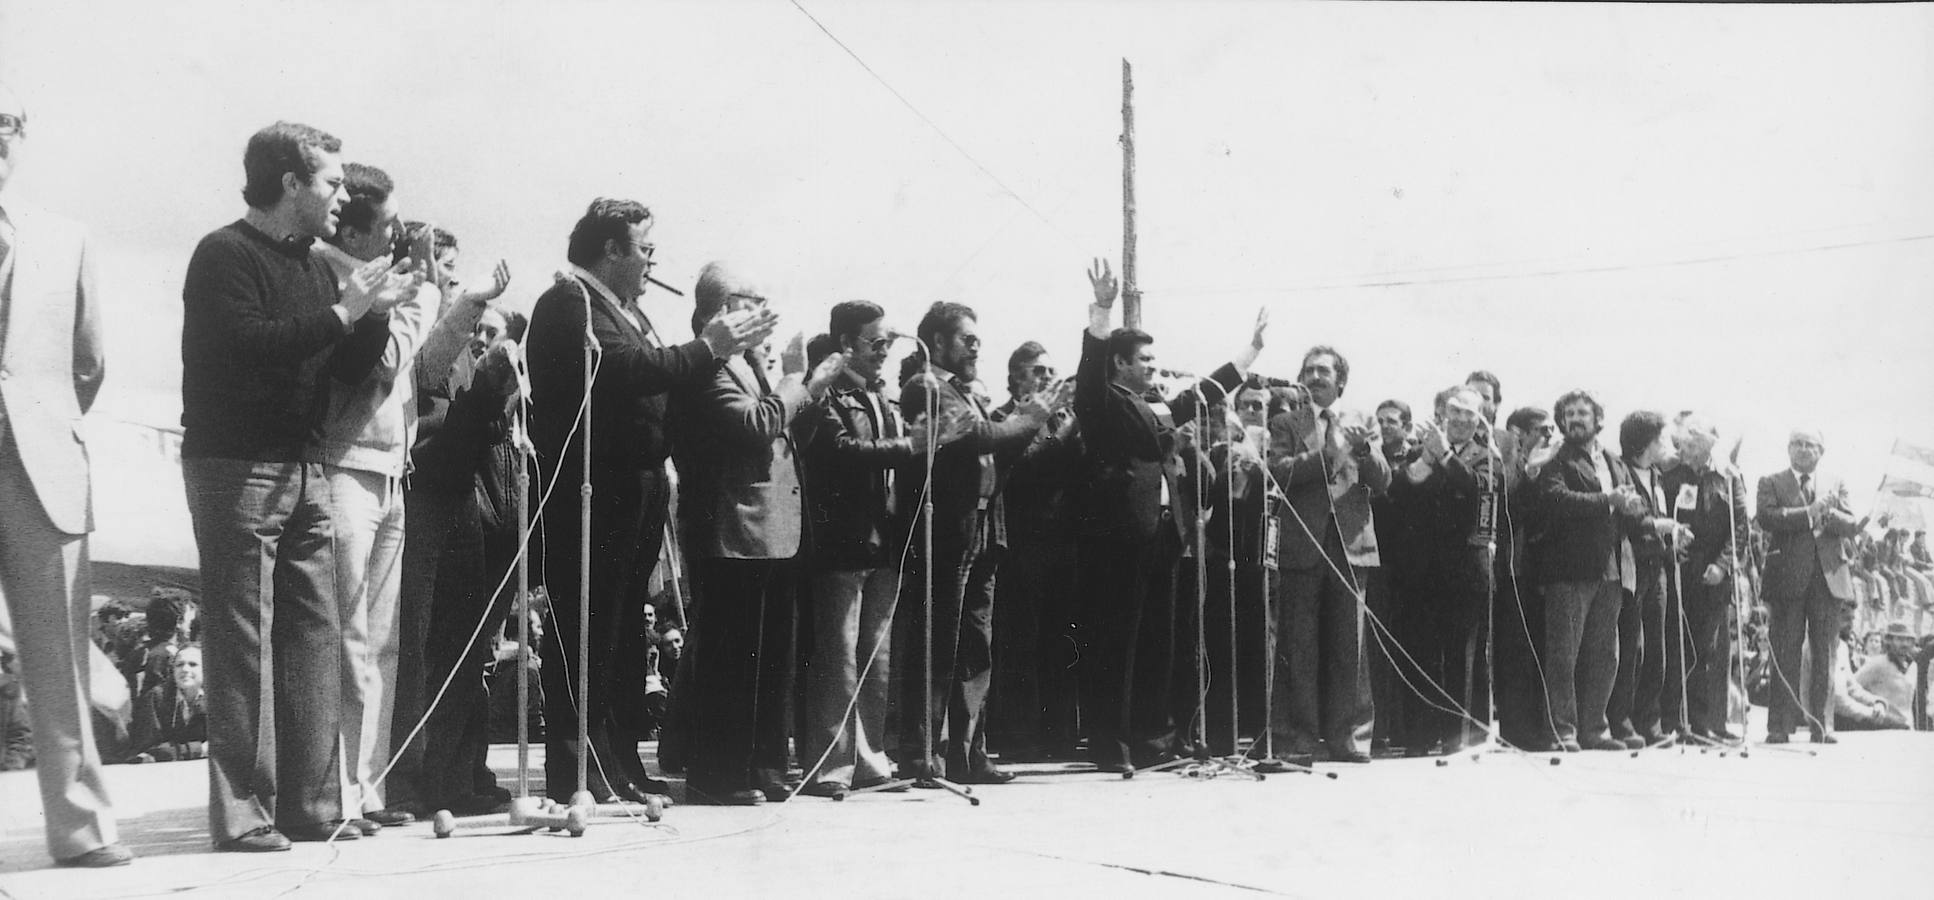 1979. Juan Manuel Reol Tejada, entonces presidente del Consejo General de Castilla y León, interviene en la campa de Villalar.